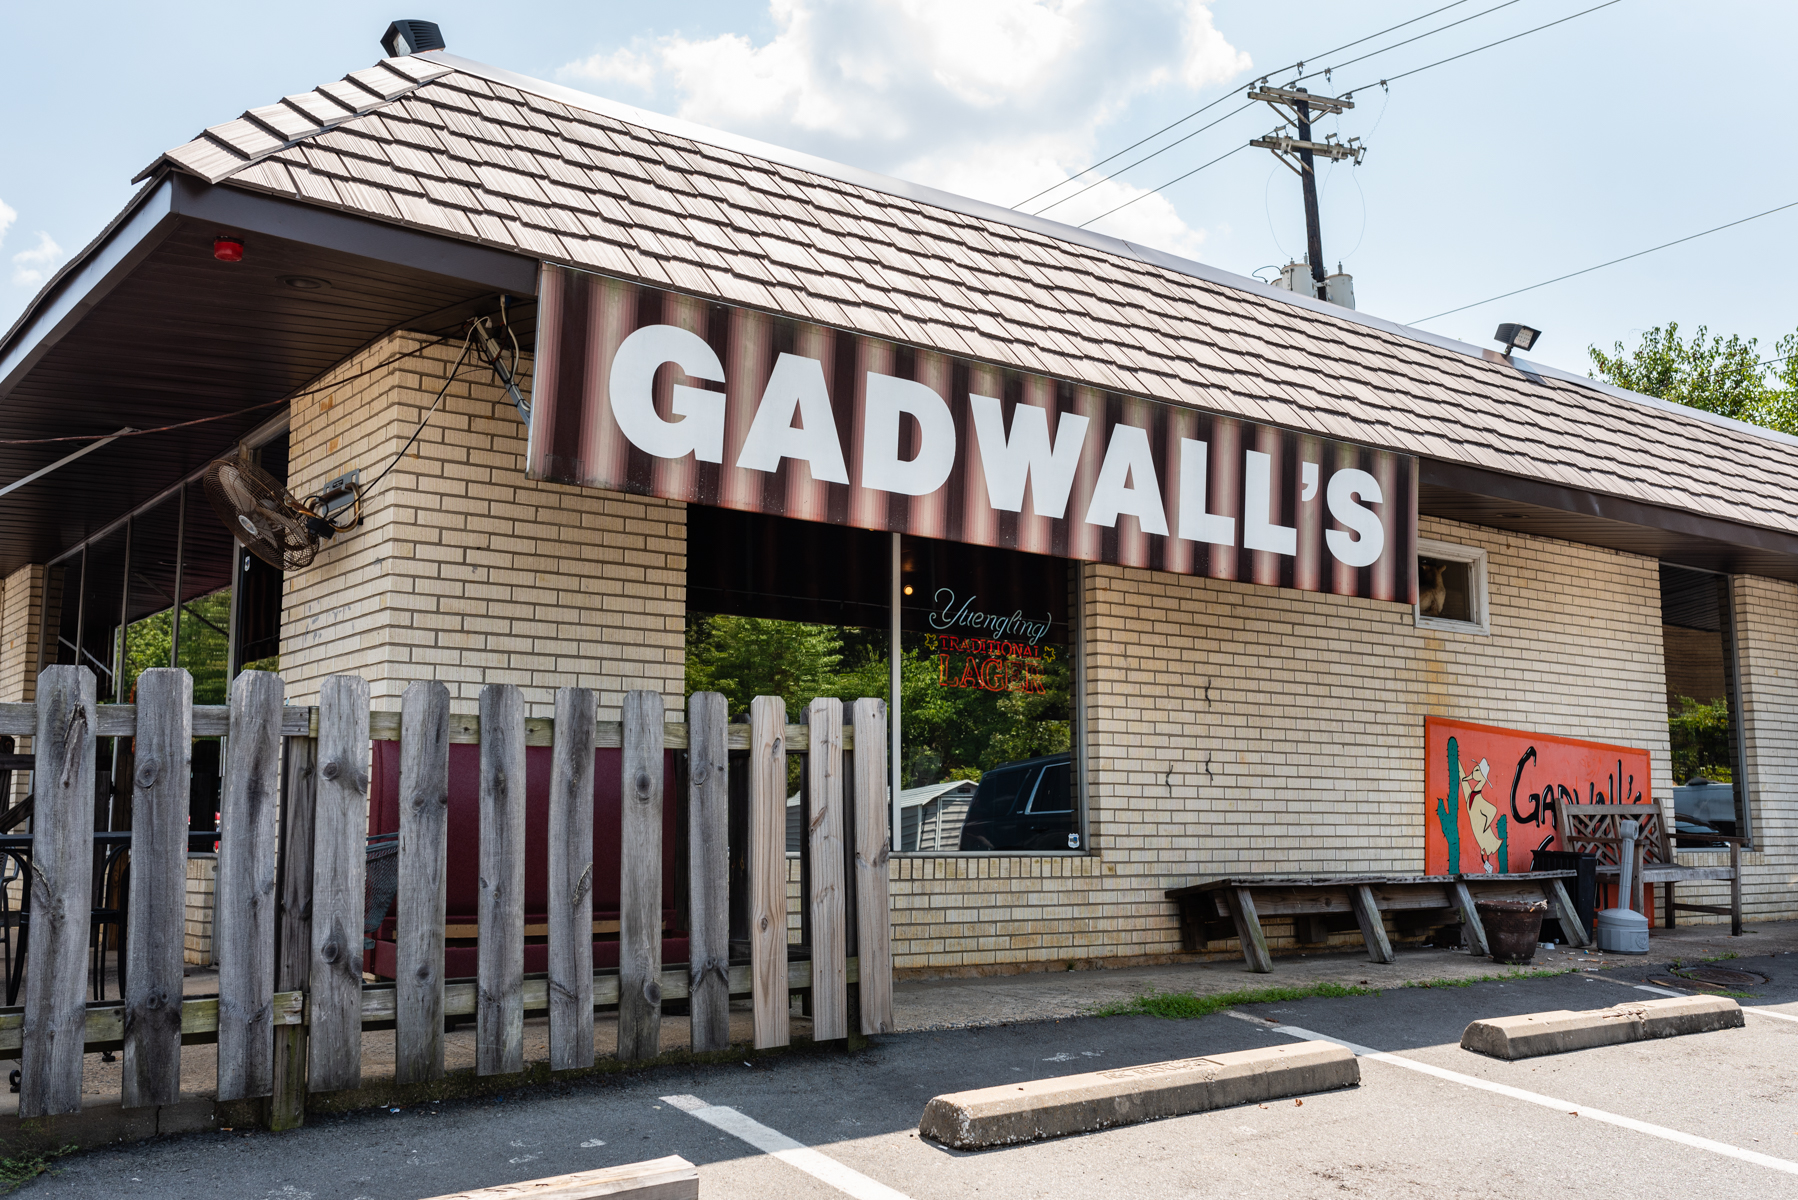 Gadwall's Grill